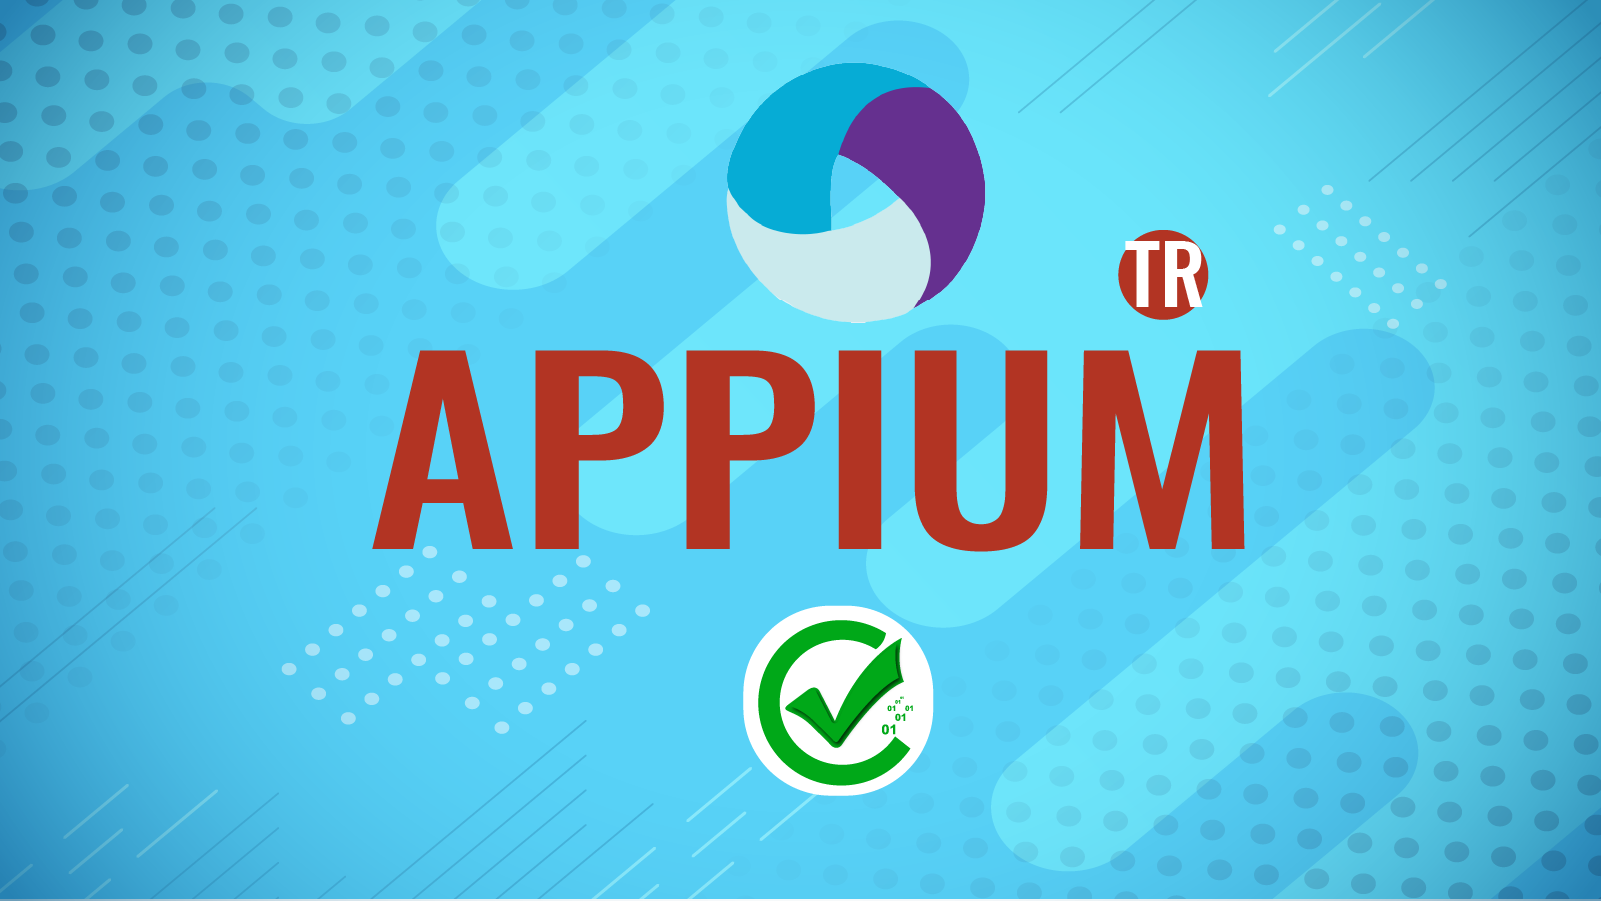 Appium 189 190